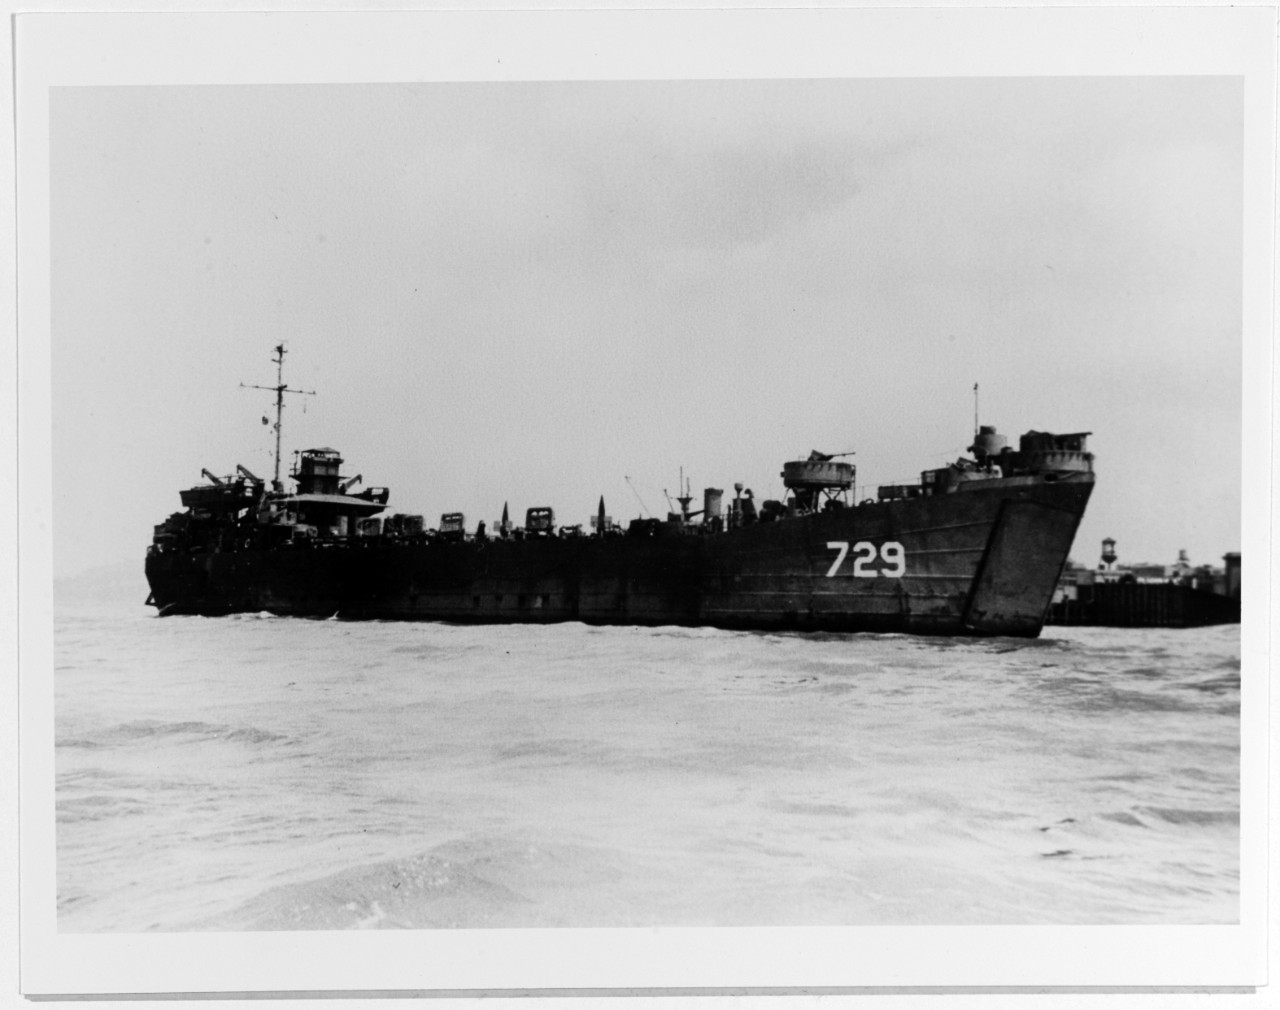 USS LST-729